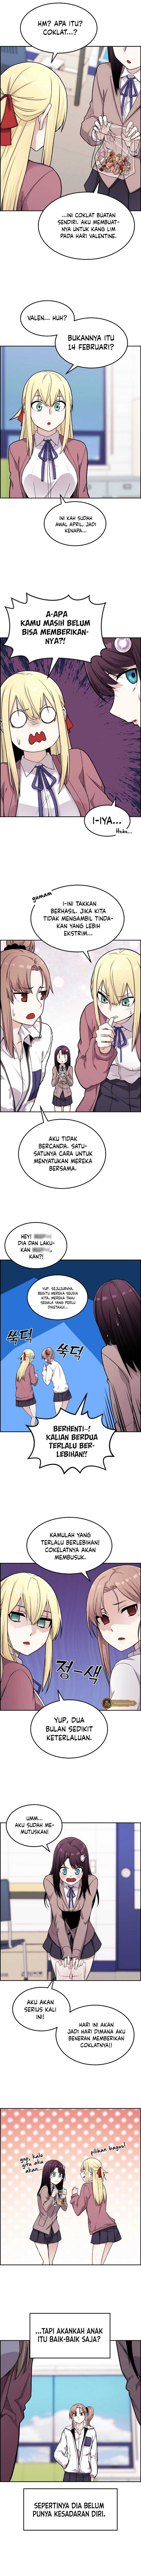 Webtoon Character Na Kang Lim Chapter 11